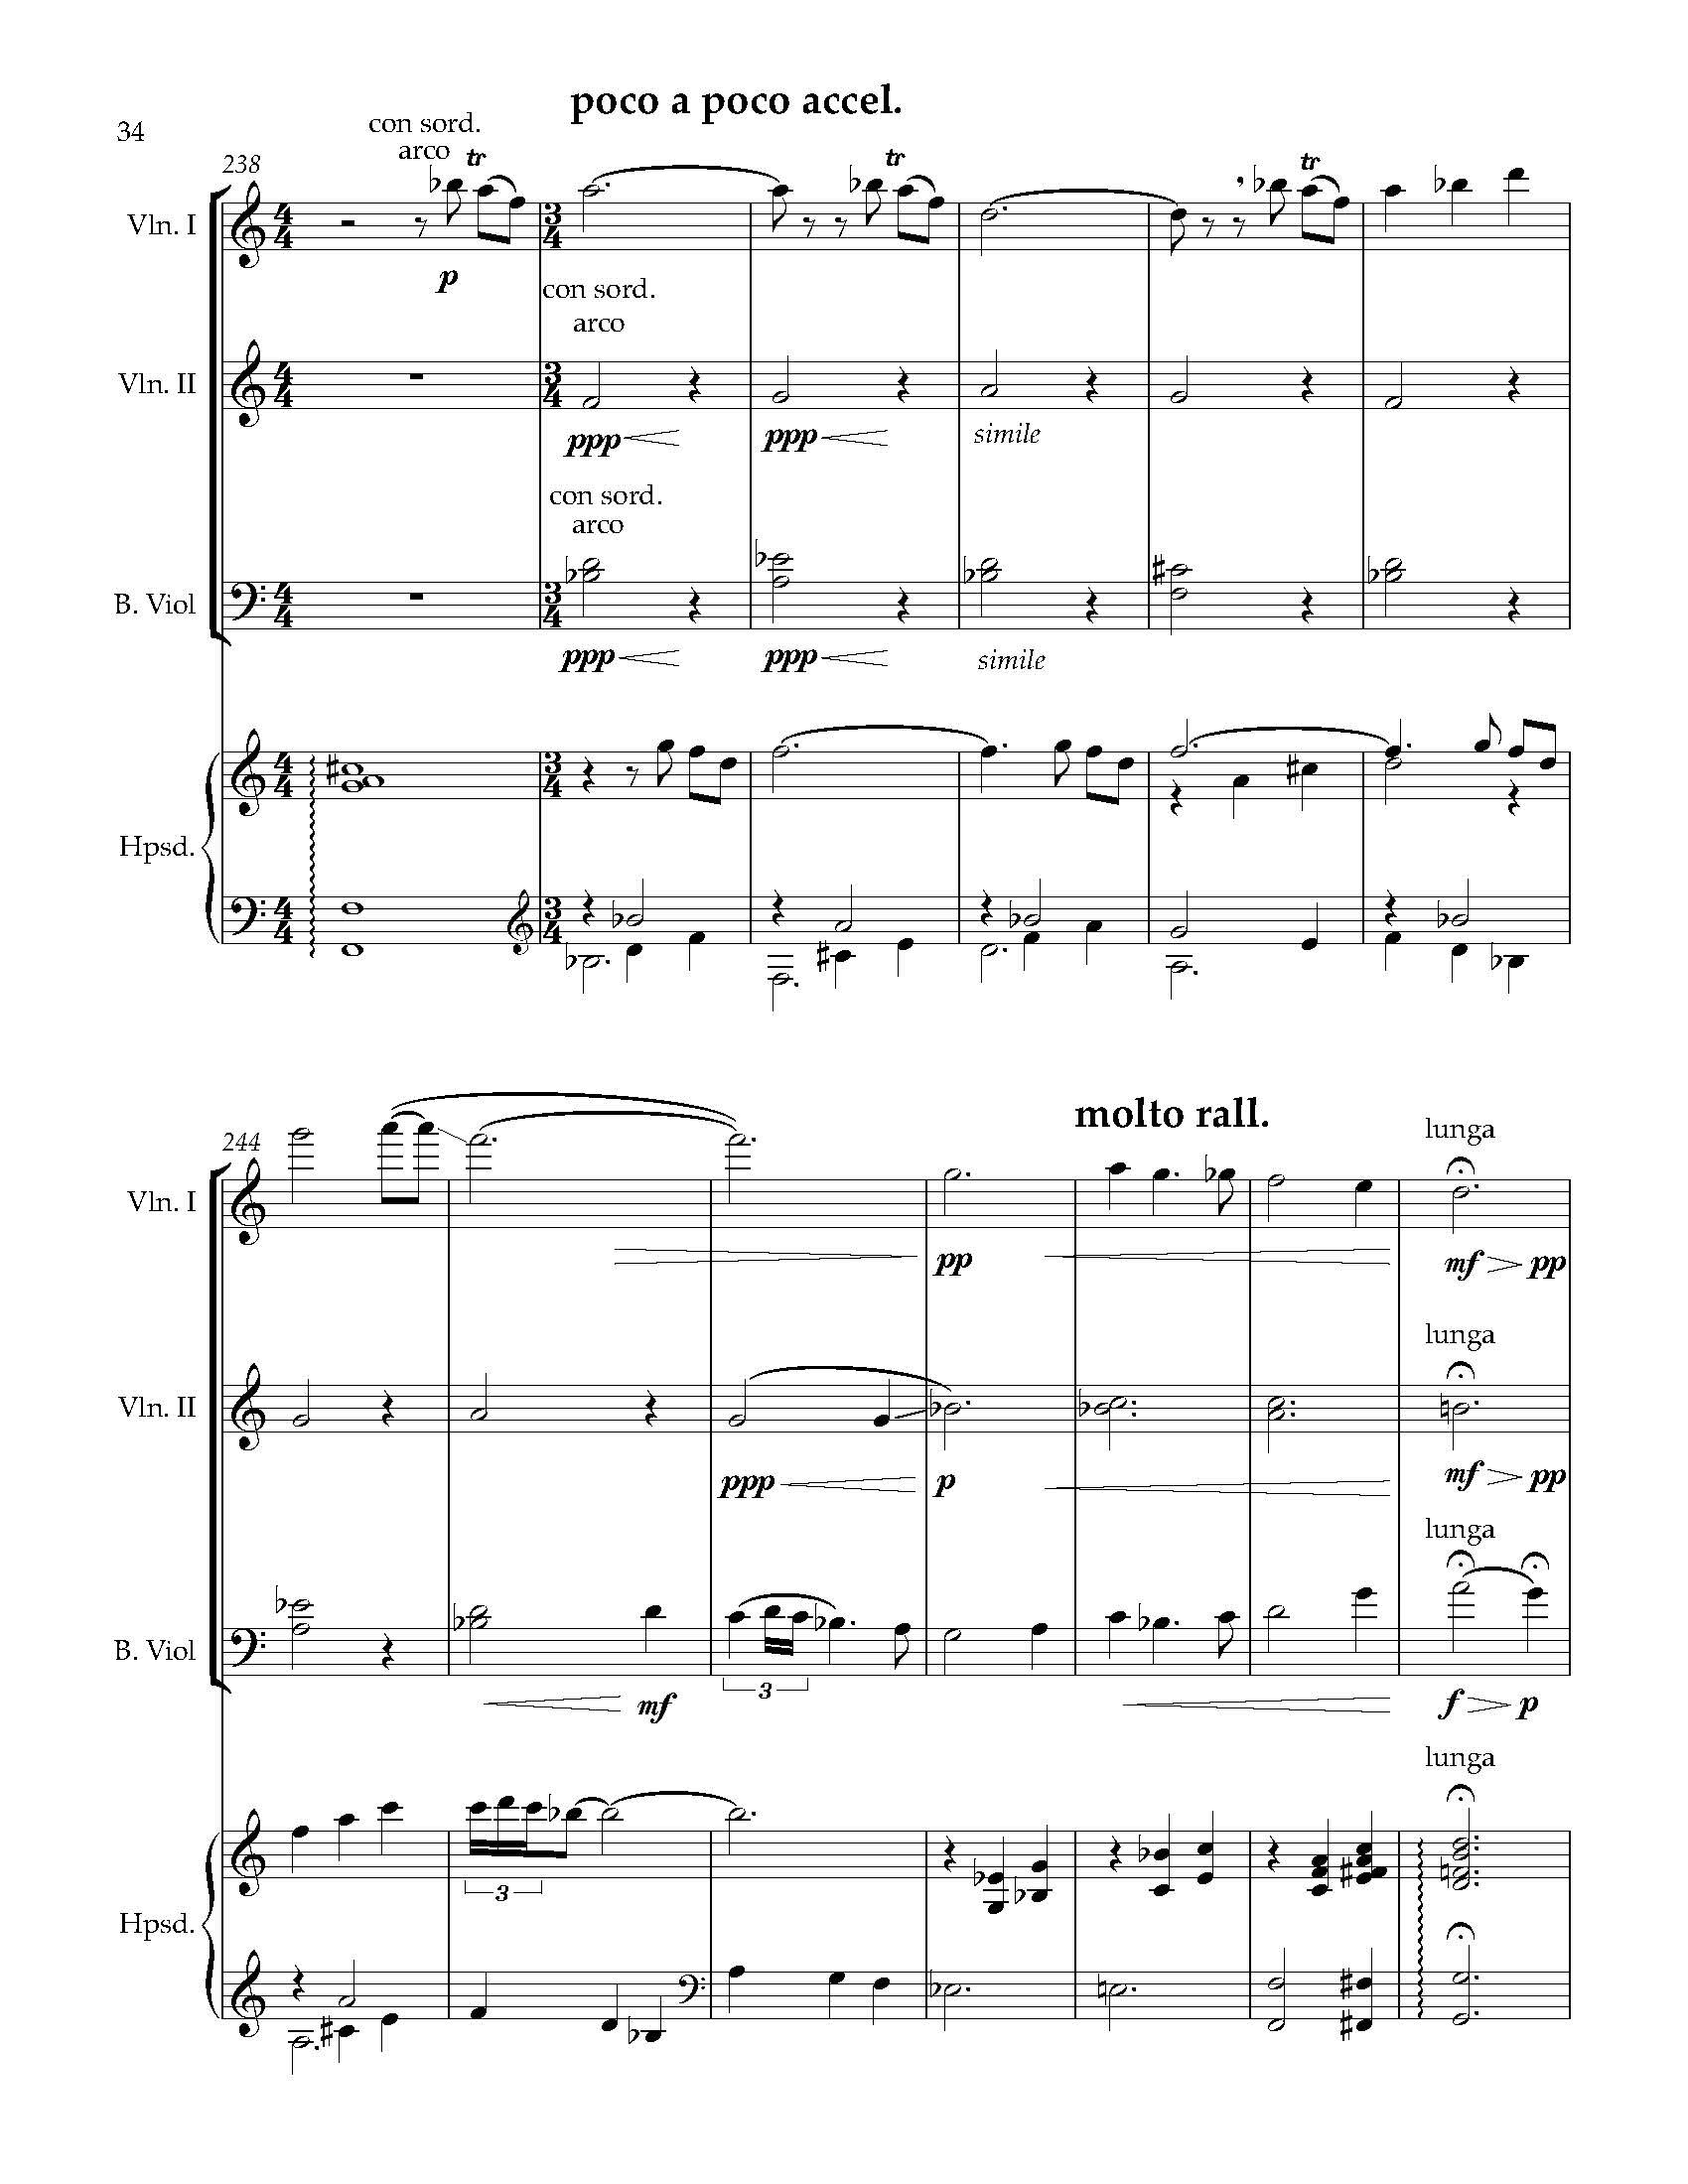 Sonata Sonare - Complete Score_Page_40.jpg